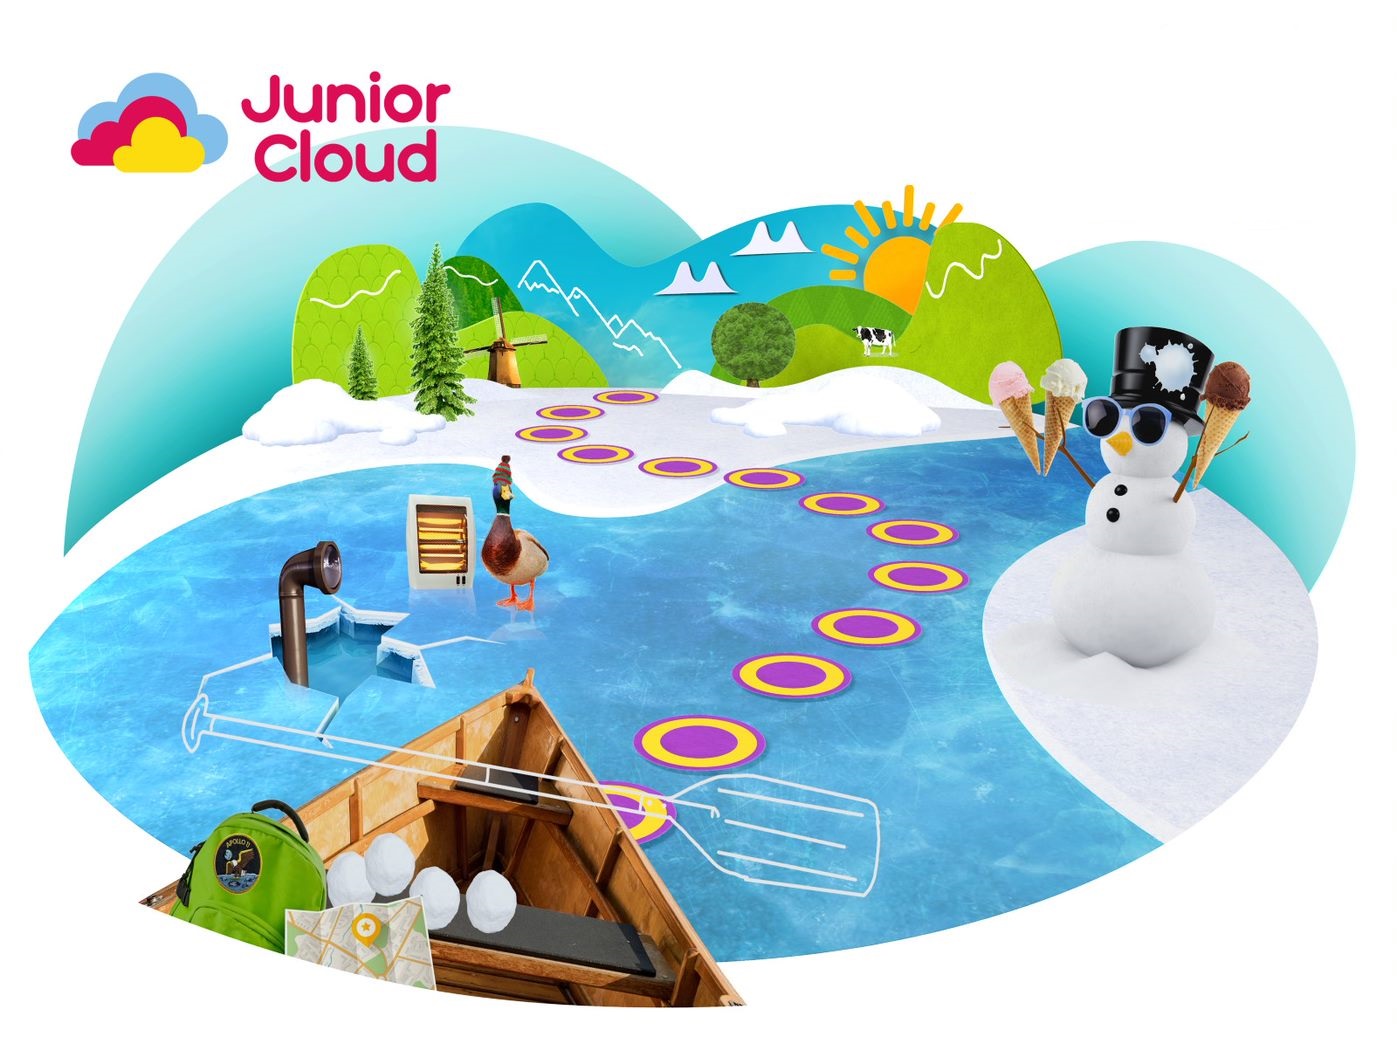 Junior Cloud